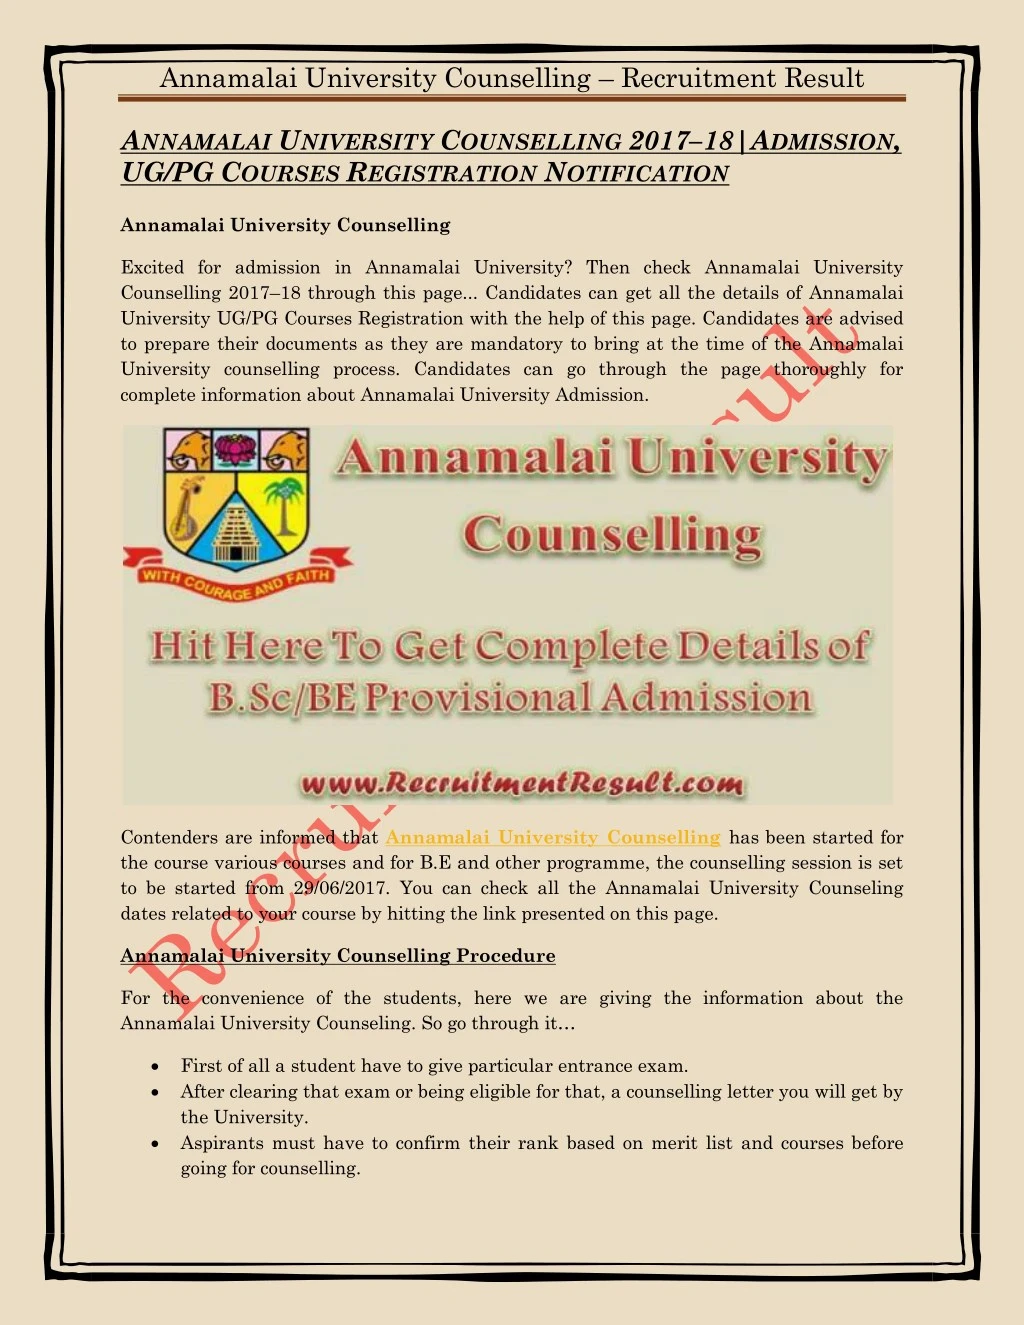 annamalai university counselling recruitment